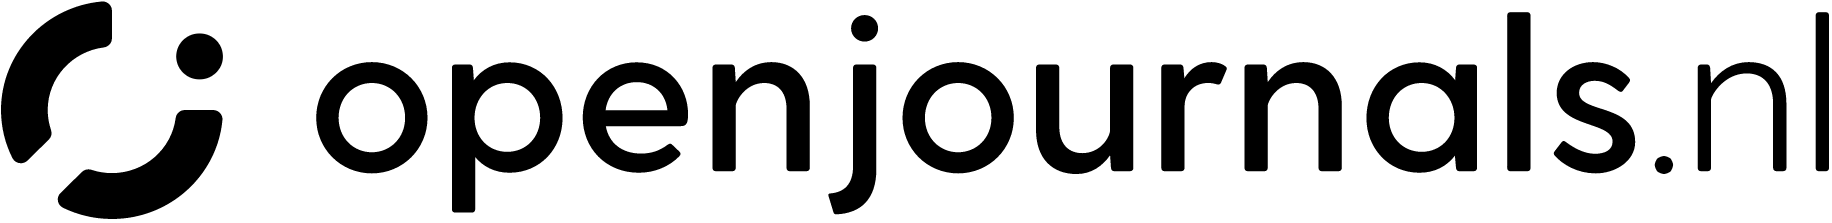 Openjournals logo